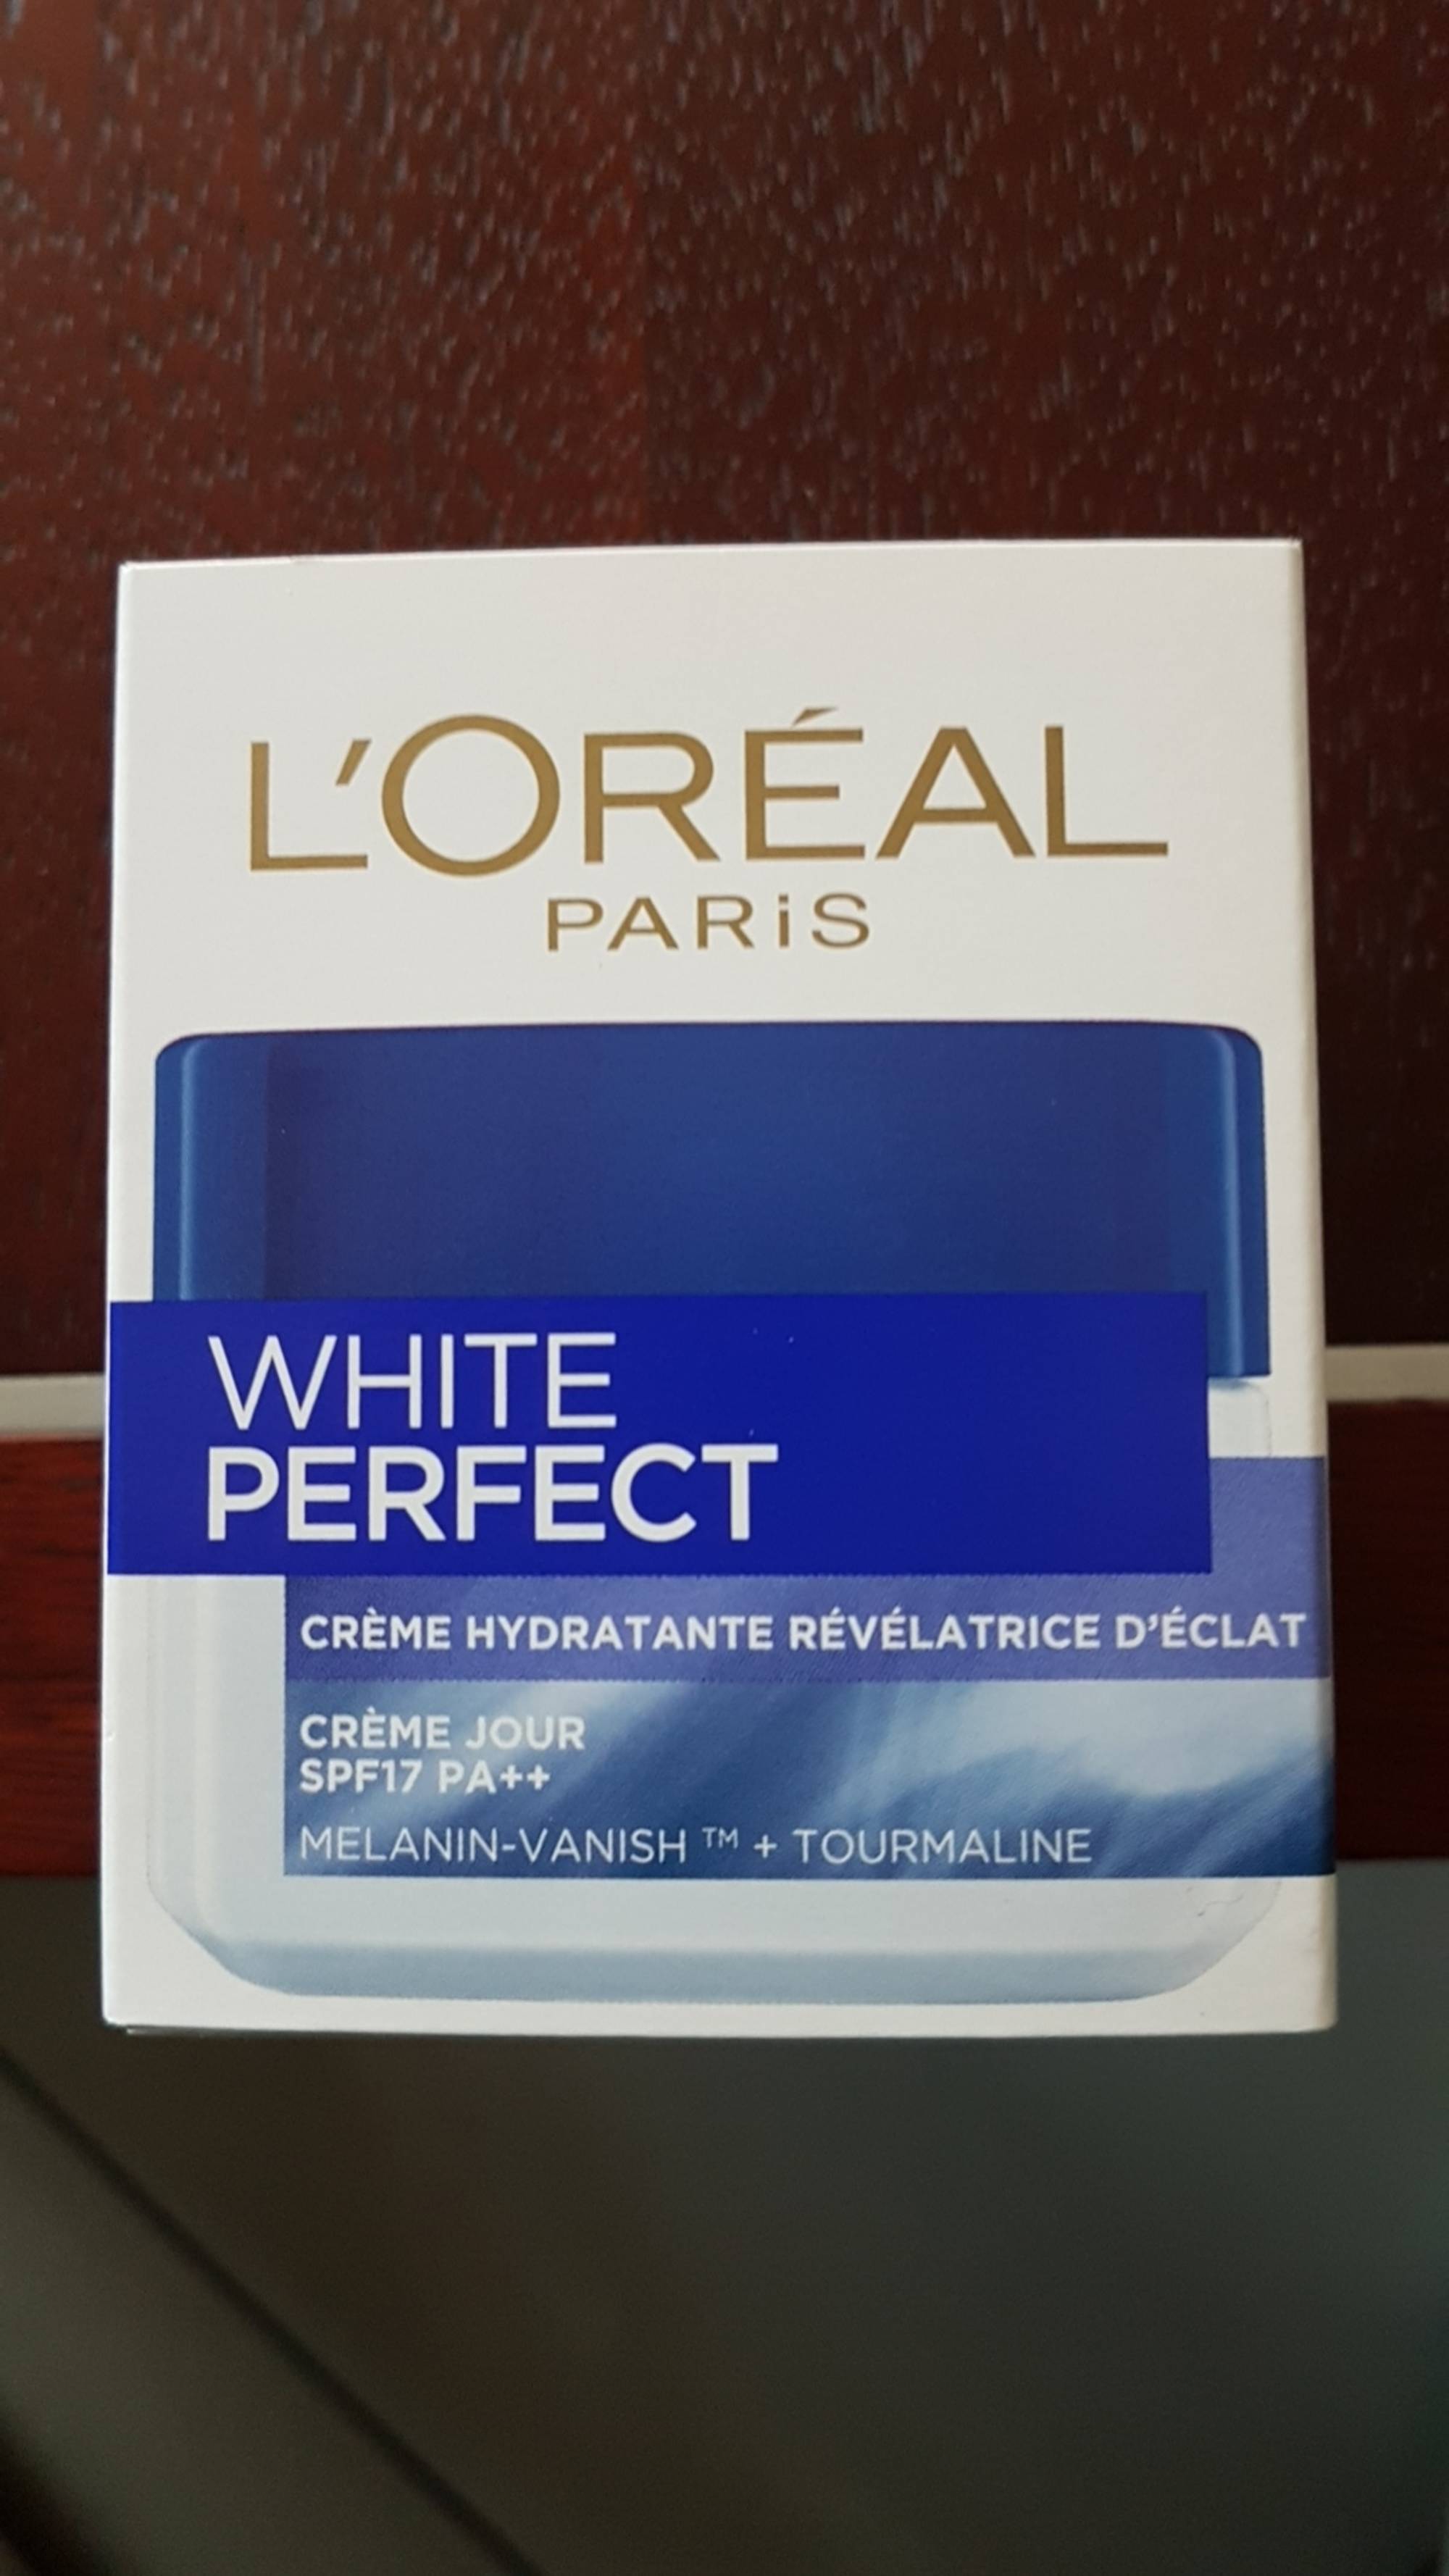 L'ORÉAL - White perfect - Crème hydratante révélatrice d'éclat SPF 17